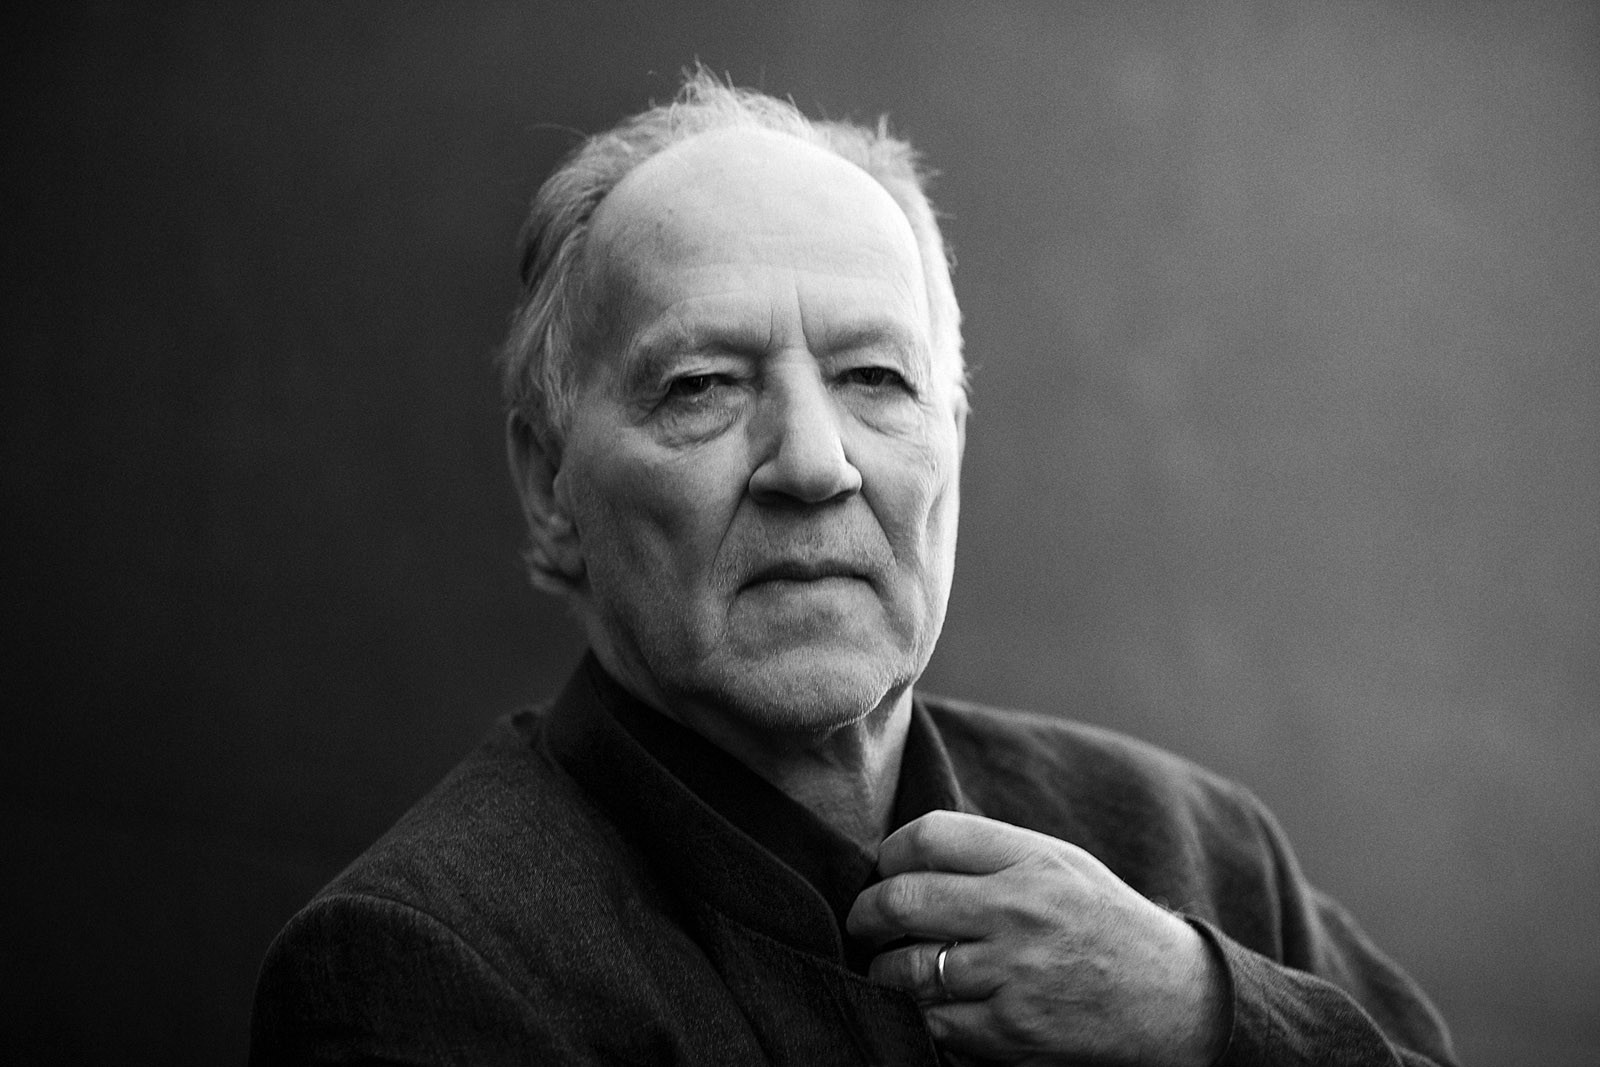 Legendary German filmmaker Werner Herzog is blood type O negative